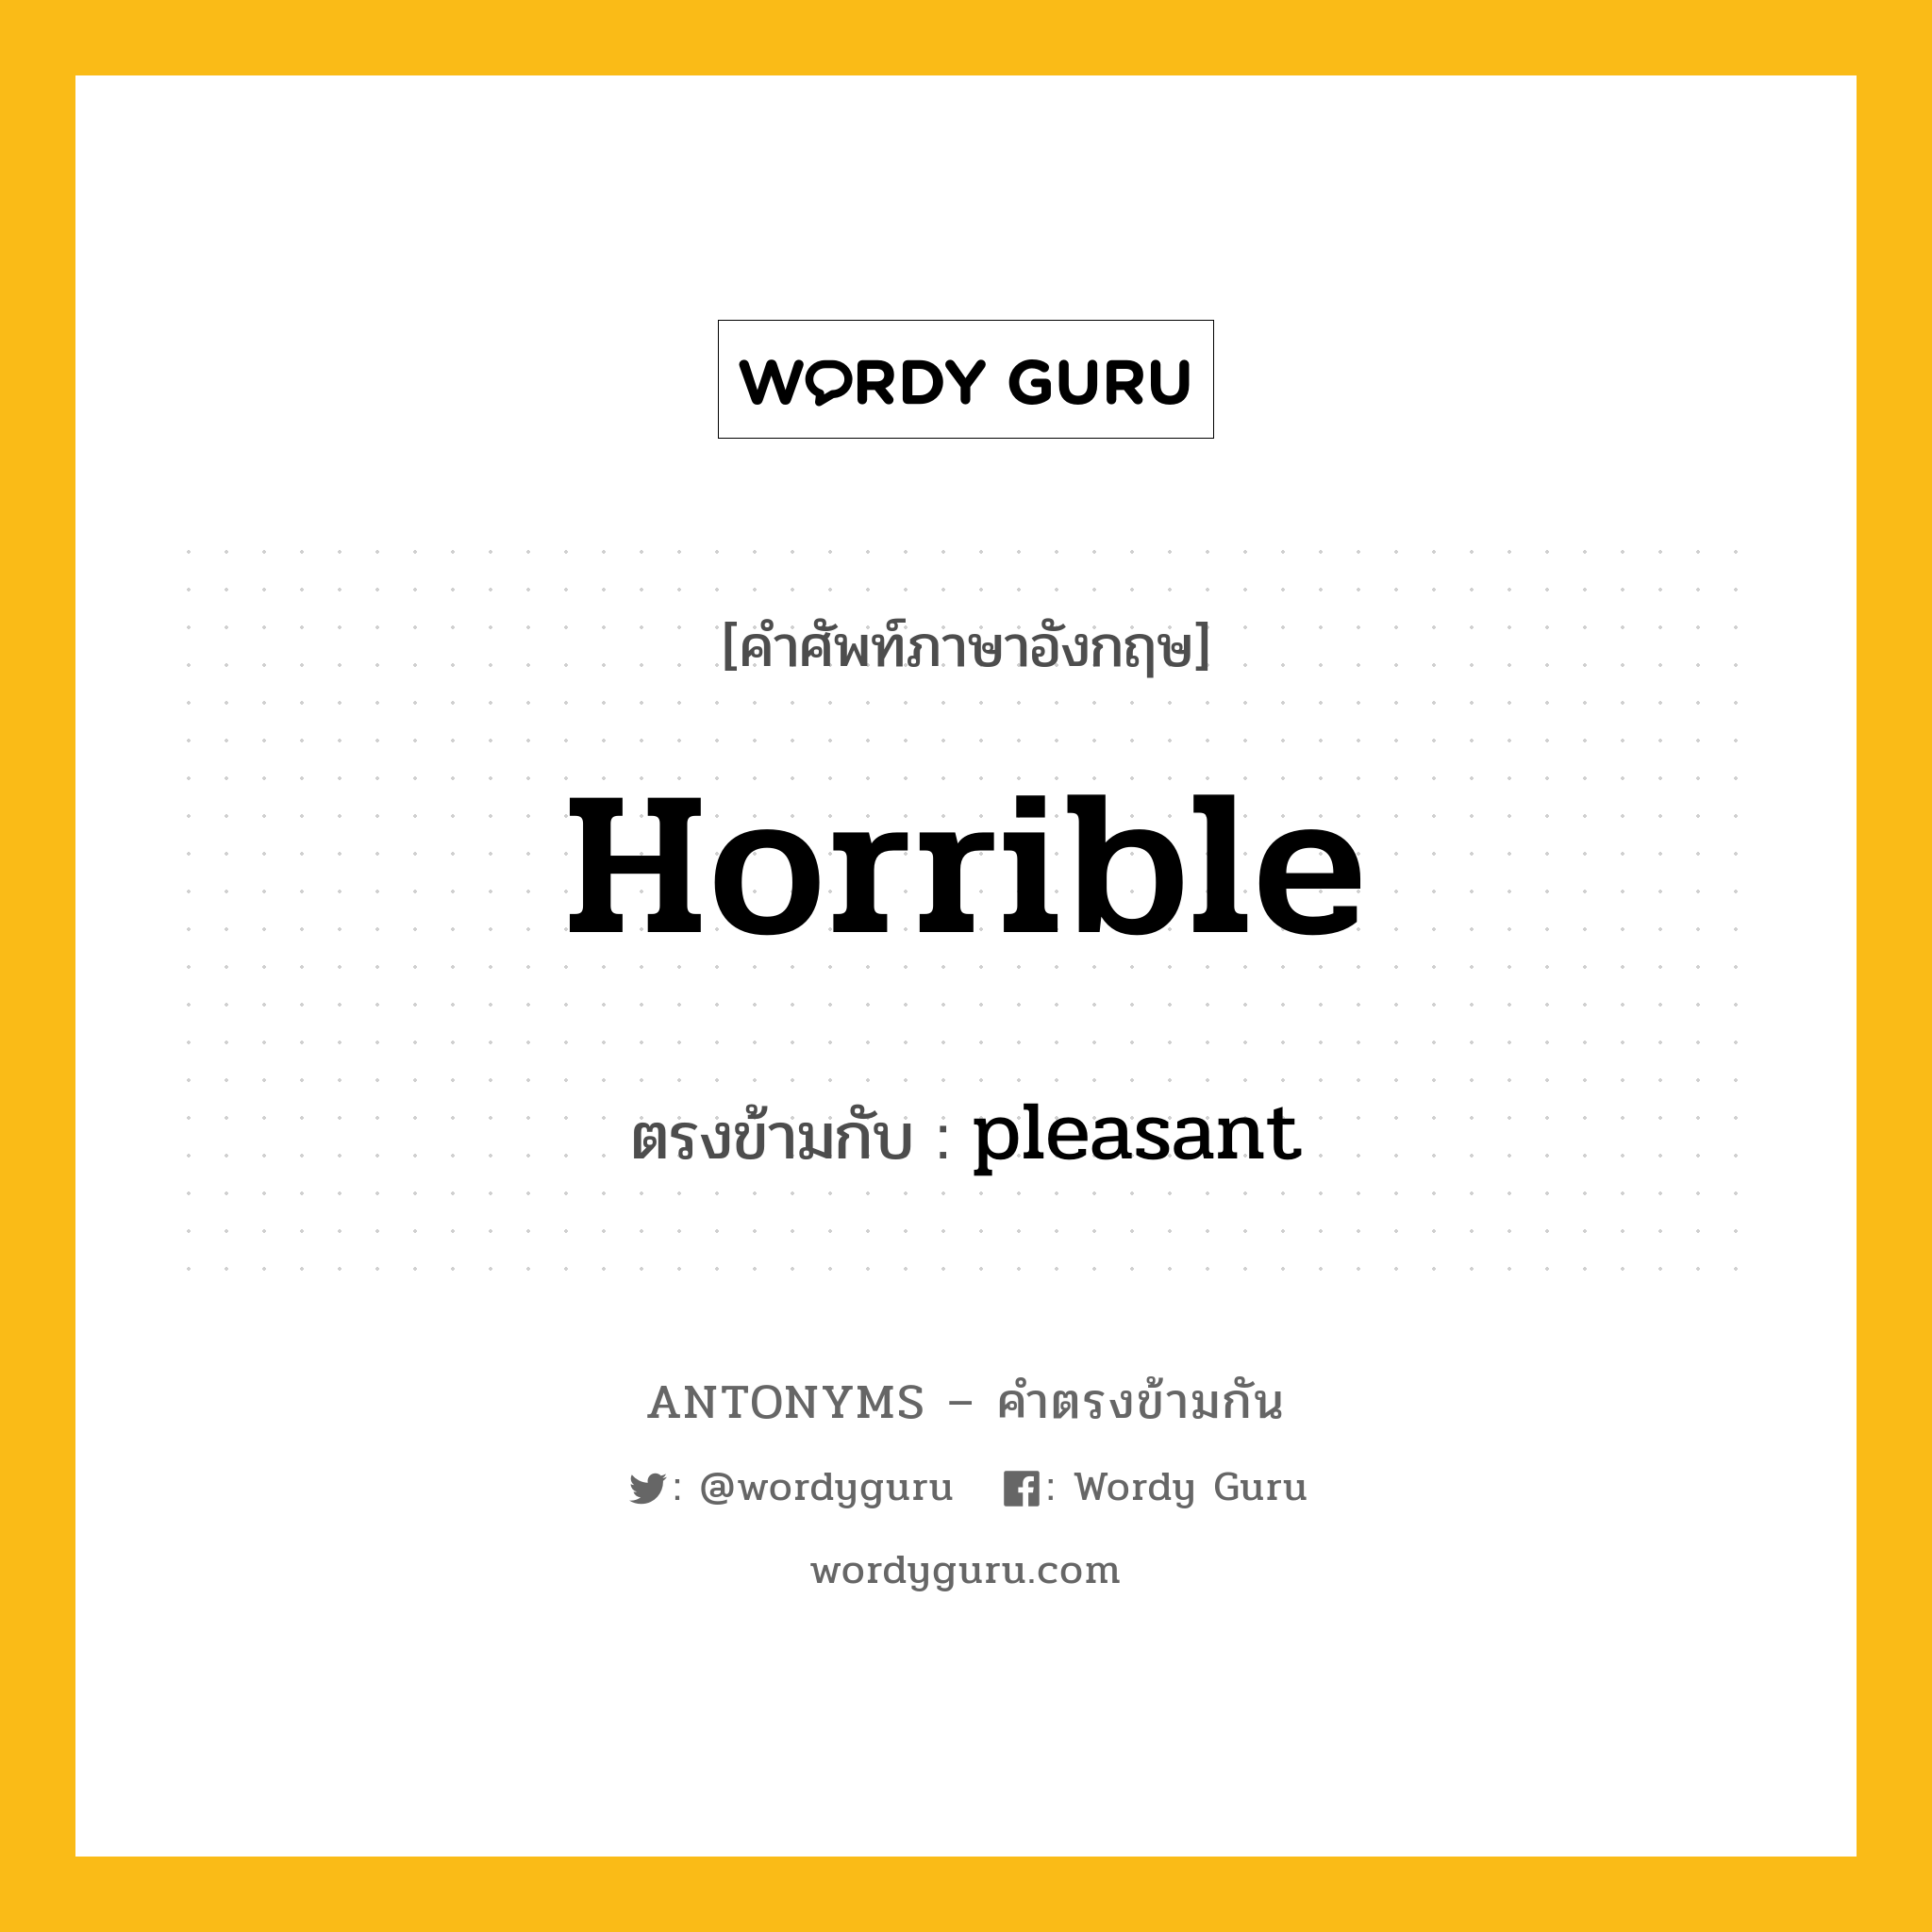 horrible เป็นคำตรงข้ามกับคำไหนบ้าง?, คำศัพท์ภาษาอังกฤษ horrible ตรงข้ามกับ pleasant หมวด pleasant